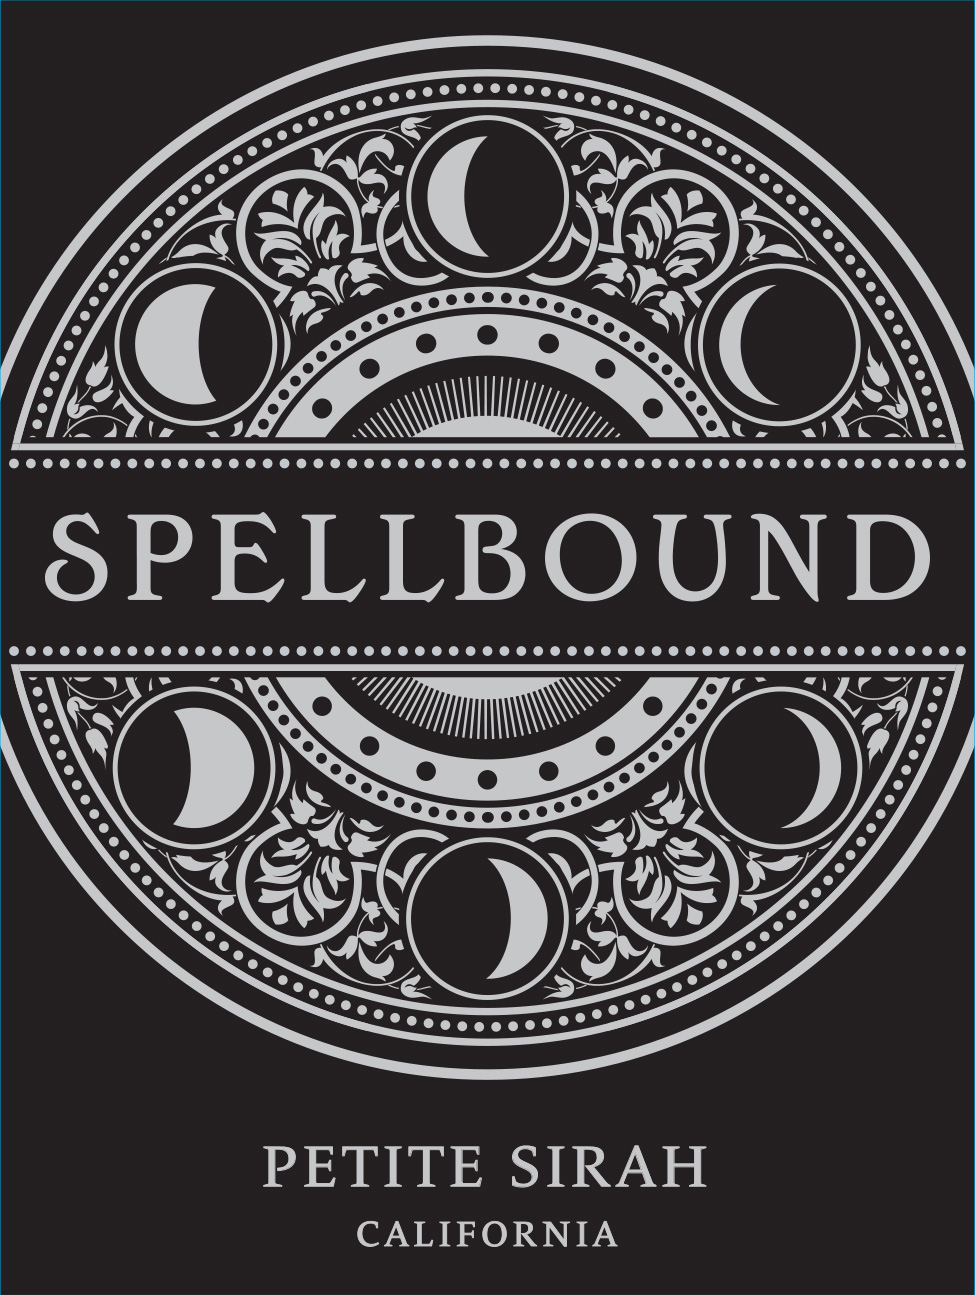 Spellbound - Petite Sirah label